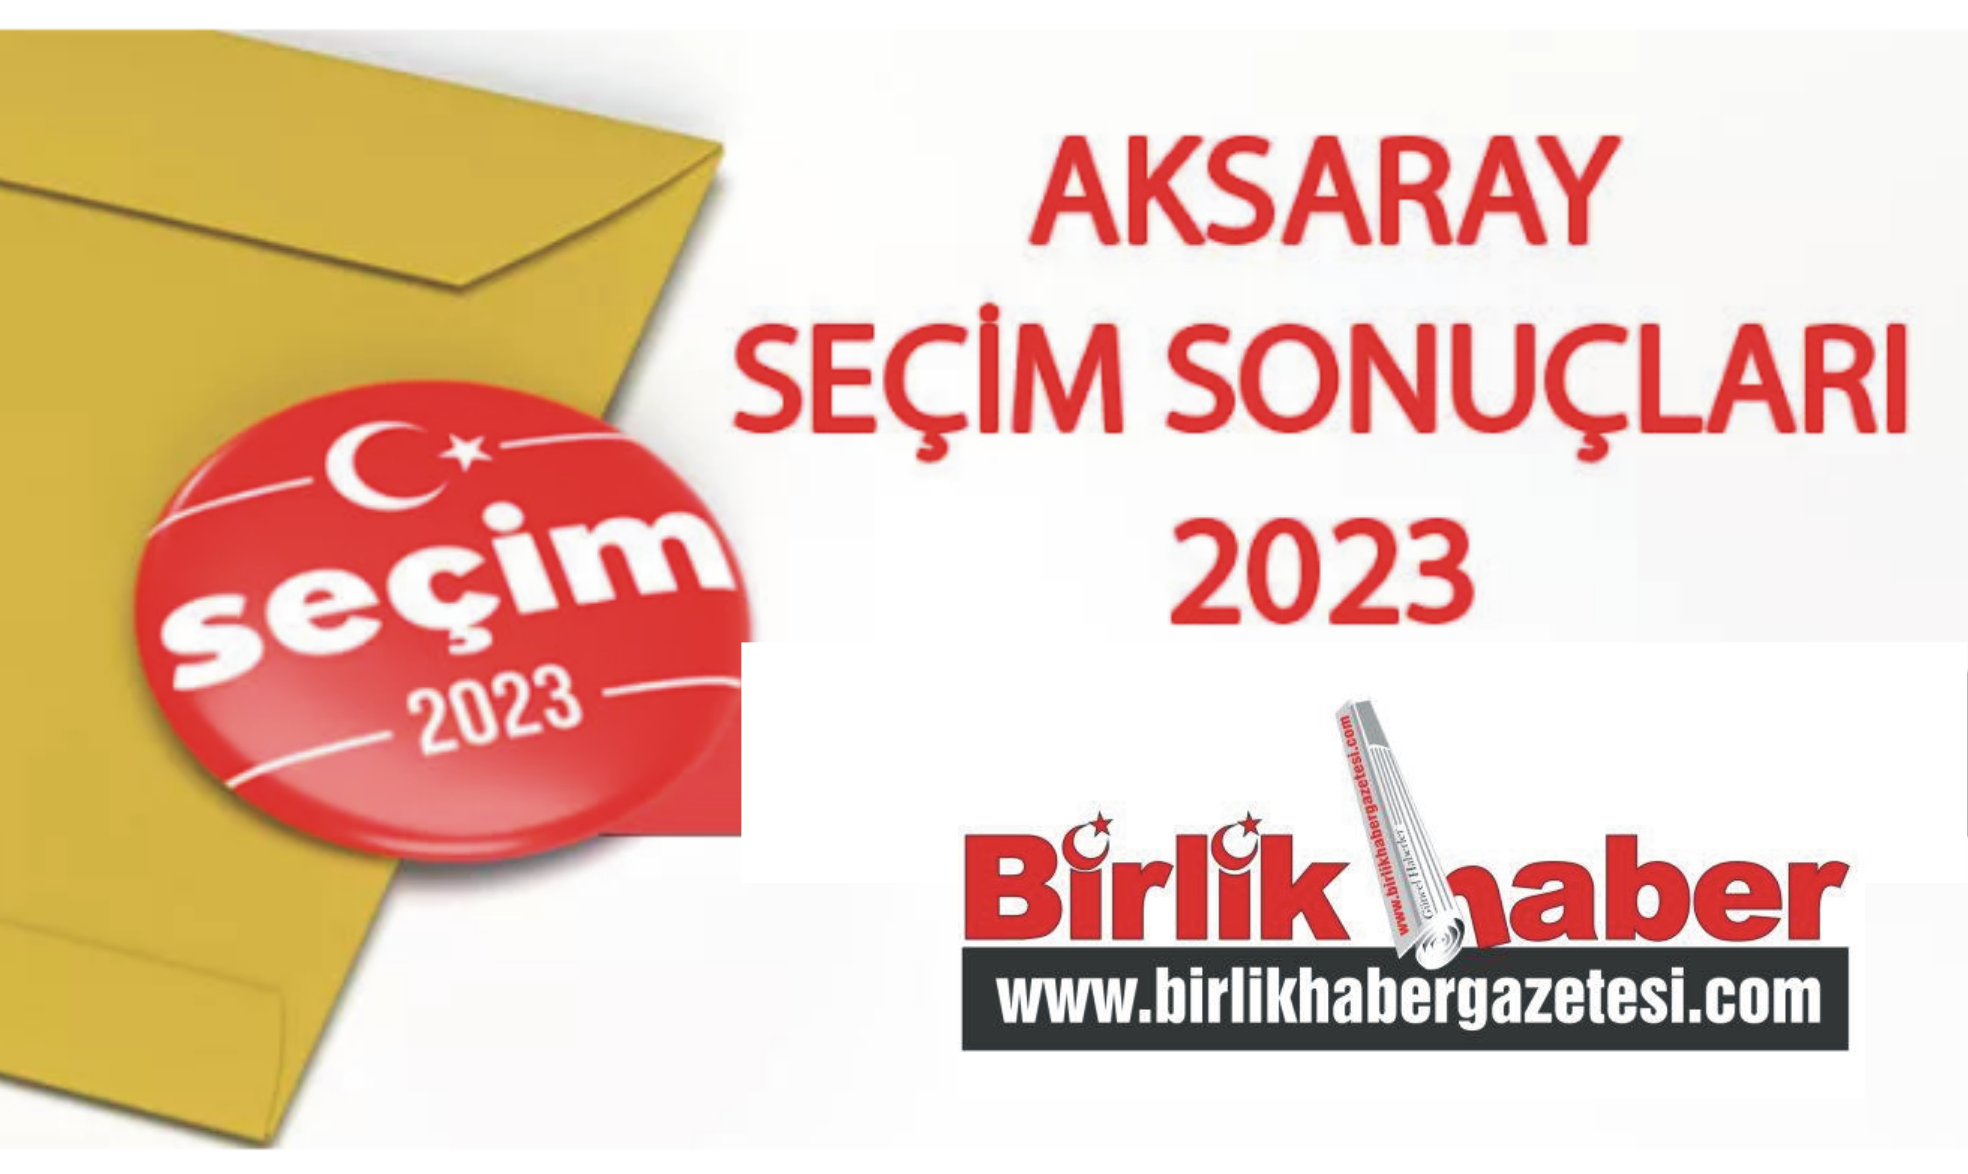 2023 Aksaray seçim sonuçları